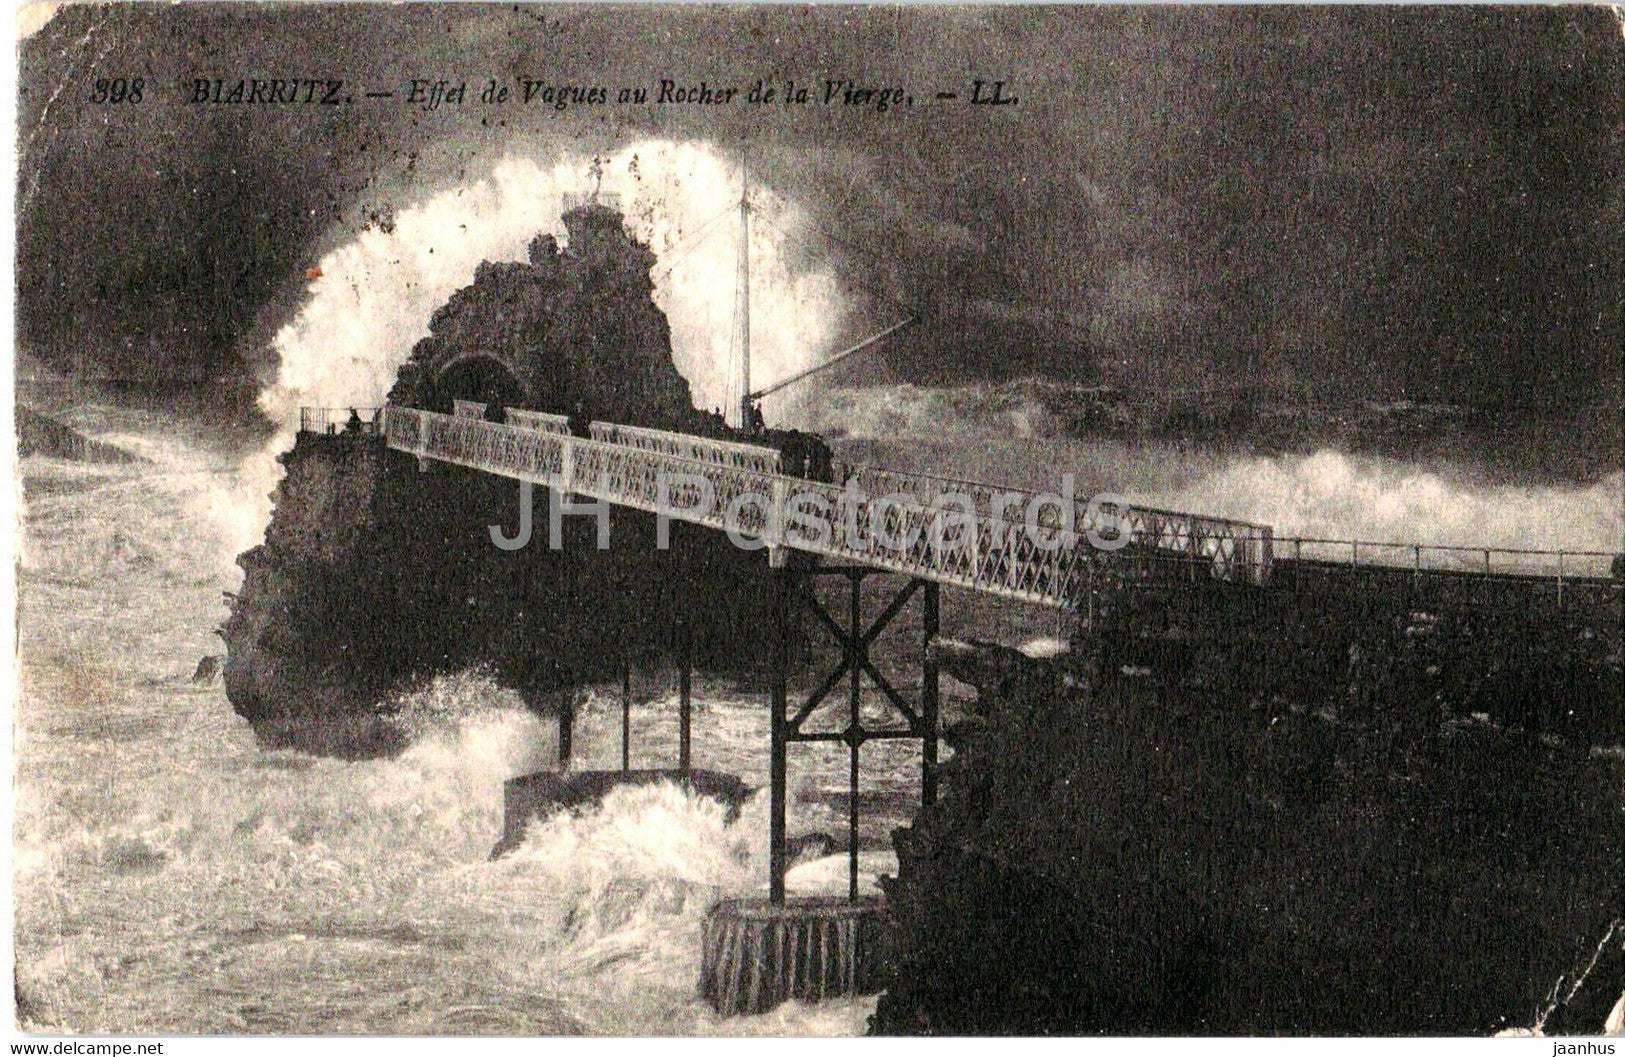 Biarritz - Effet de Vagues au Rocher de la Vierge - 398 - old postcard - 1923 - France - used - JH Postcards